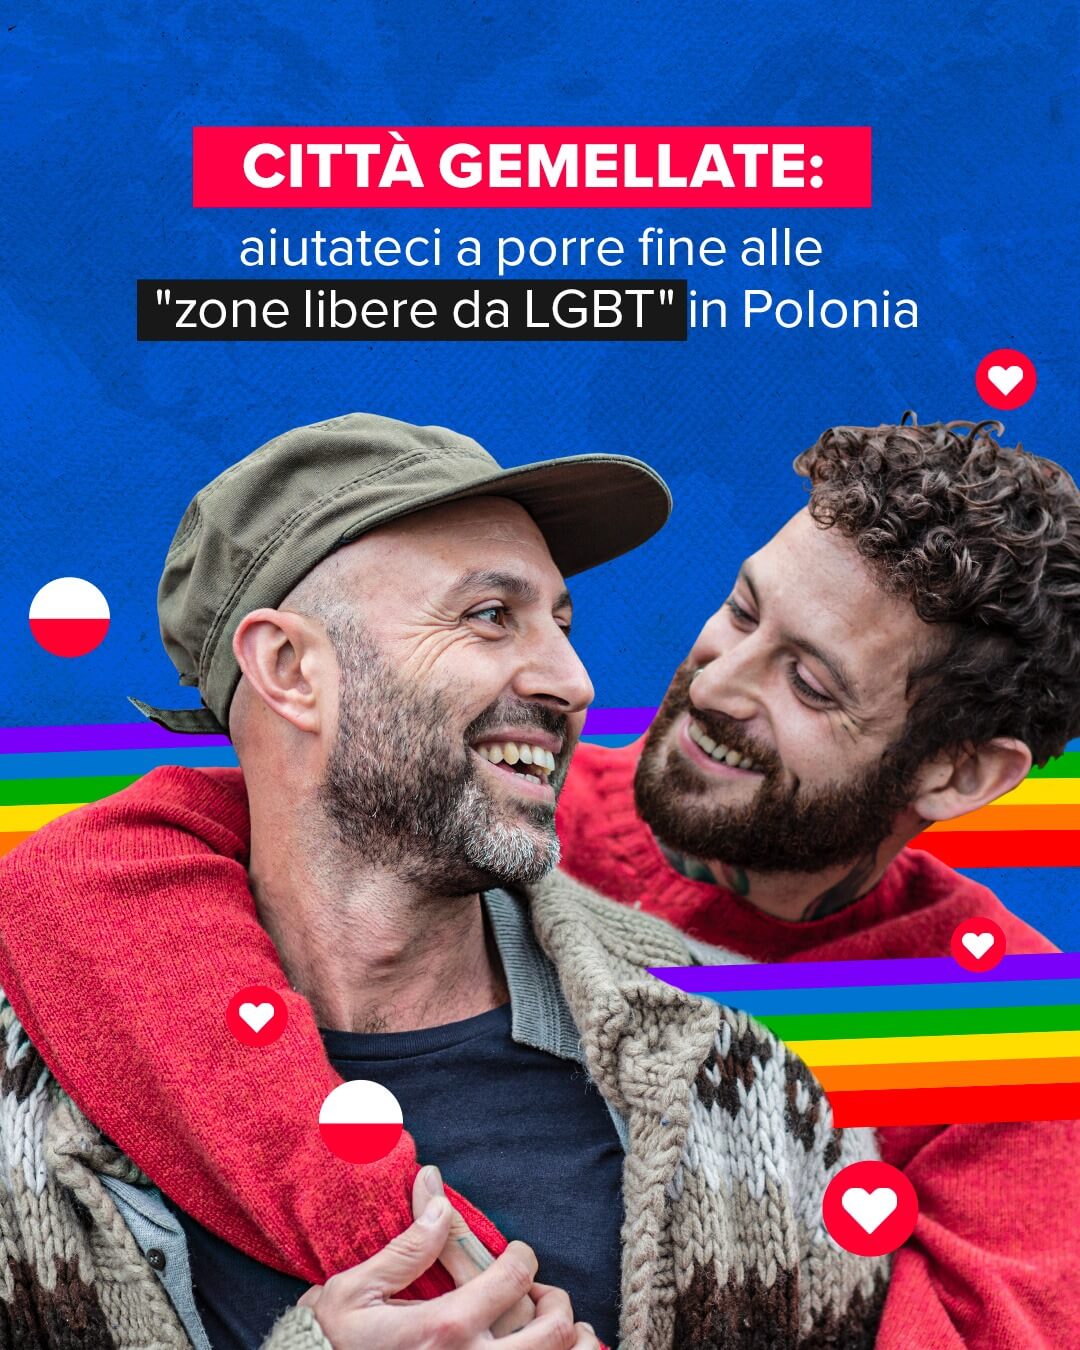 Per amore della Polonia, via alla campagna in favore della comunità LGBT polacca - 94670340 3460403447320490 3757559517382967296 o 1 - Gay.it